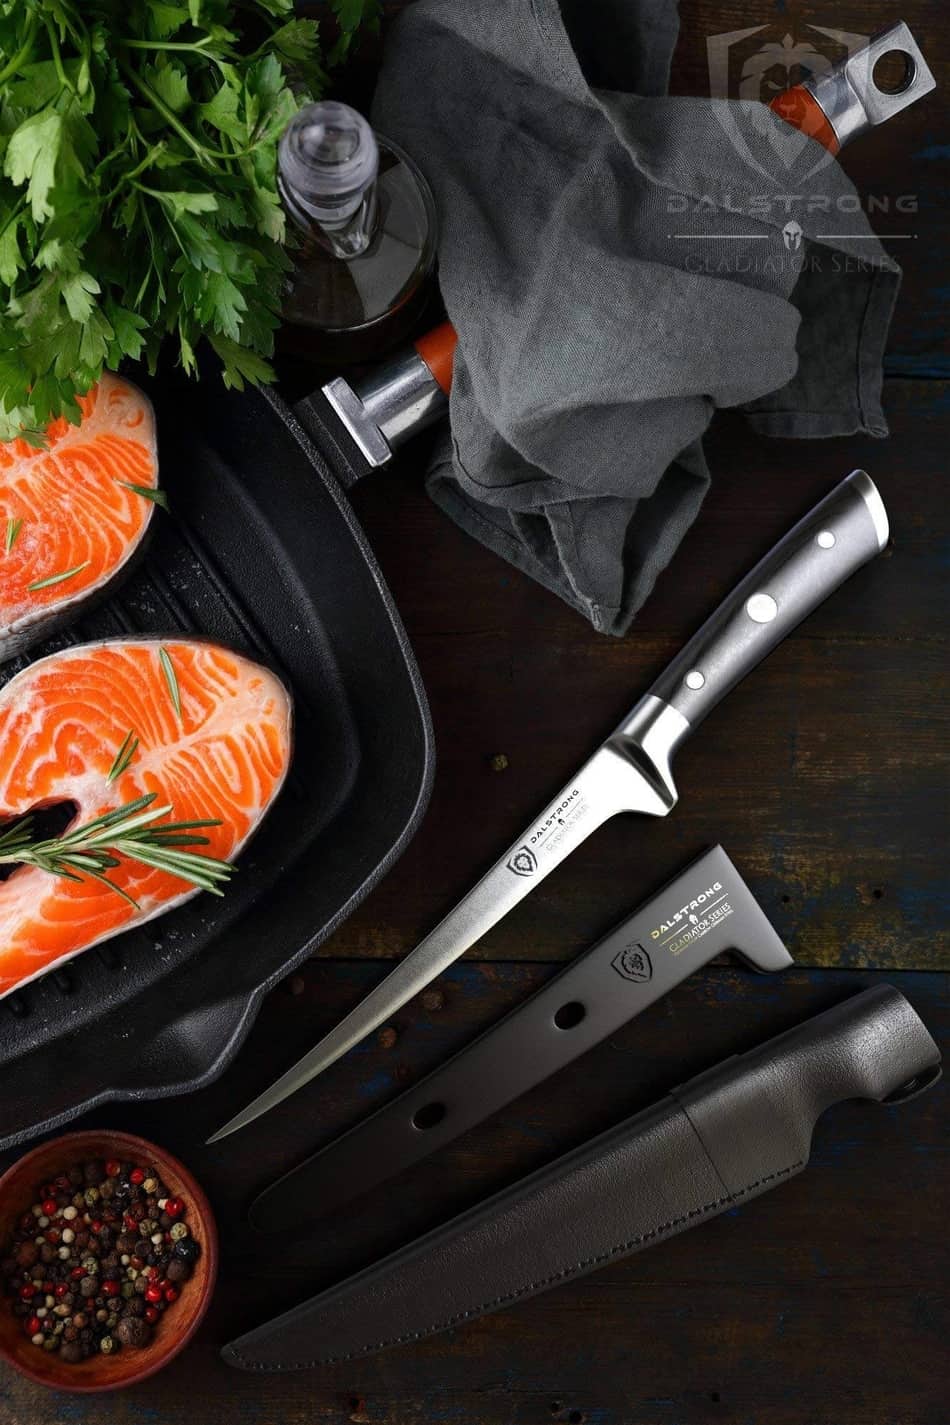 DALSTRONG Filet Knife, best fillet knife, best fillet knife 2021,best fish fillet knife, best fillet knives, best fillet knife for saltwater fish